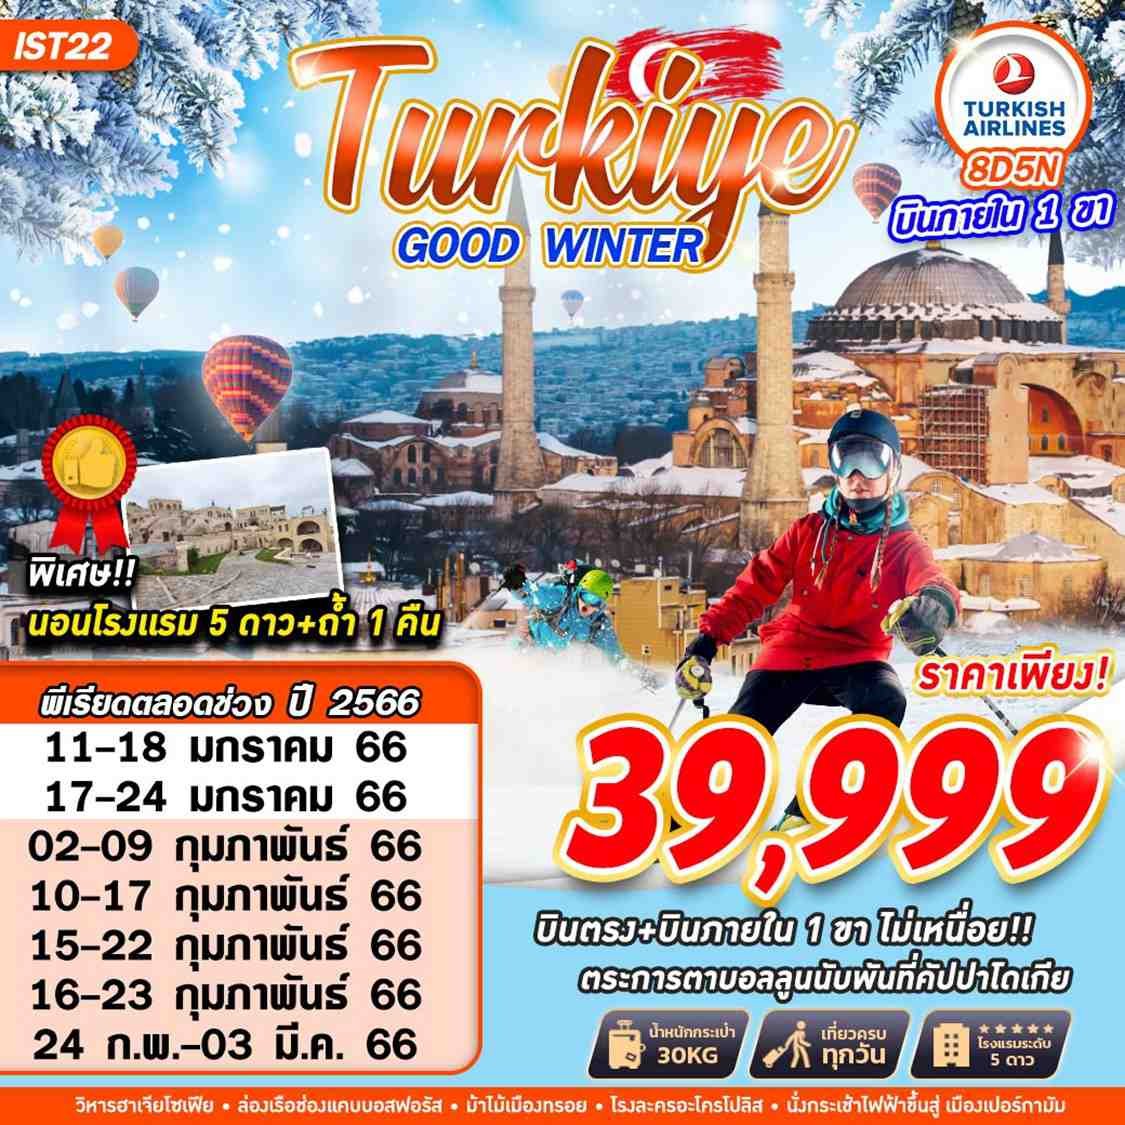 ทัวร์ตุรกี TURKEY GOOD WINTER  TK+DOM FLT  8D5N